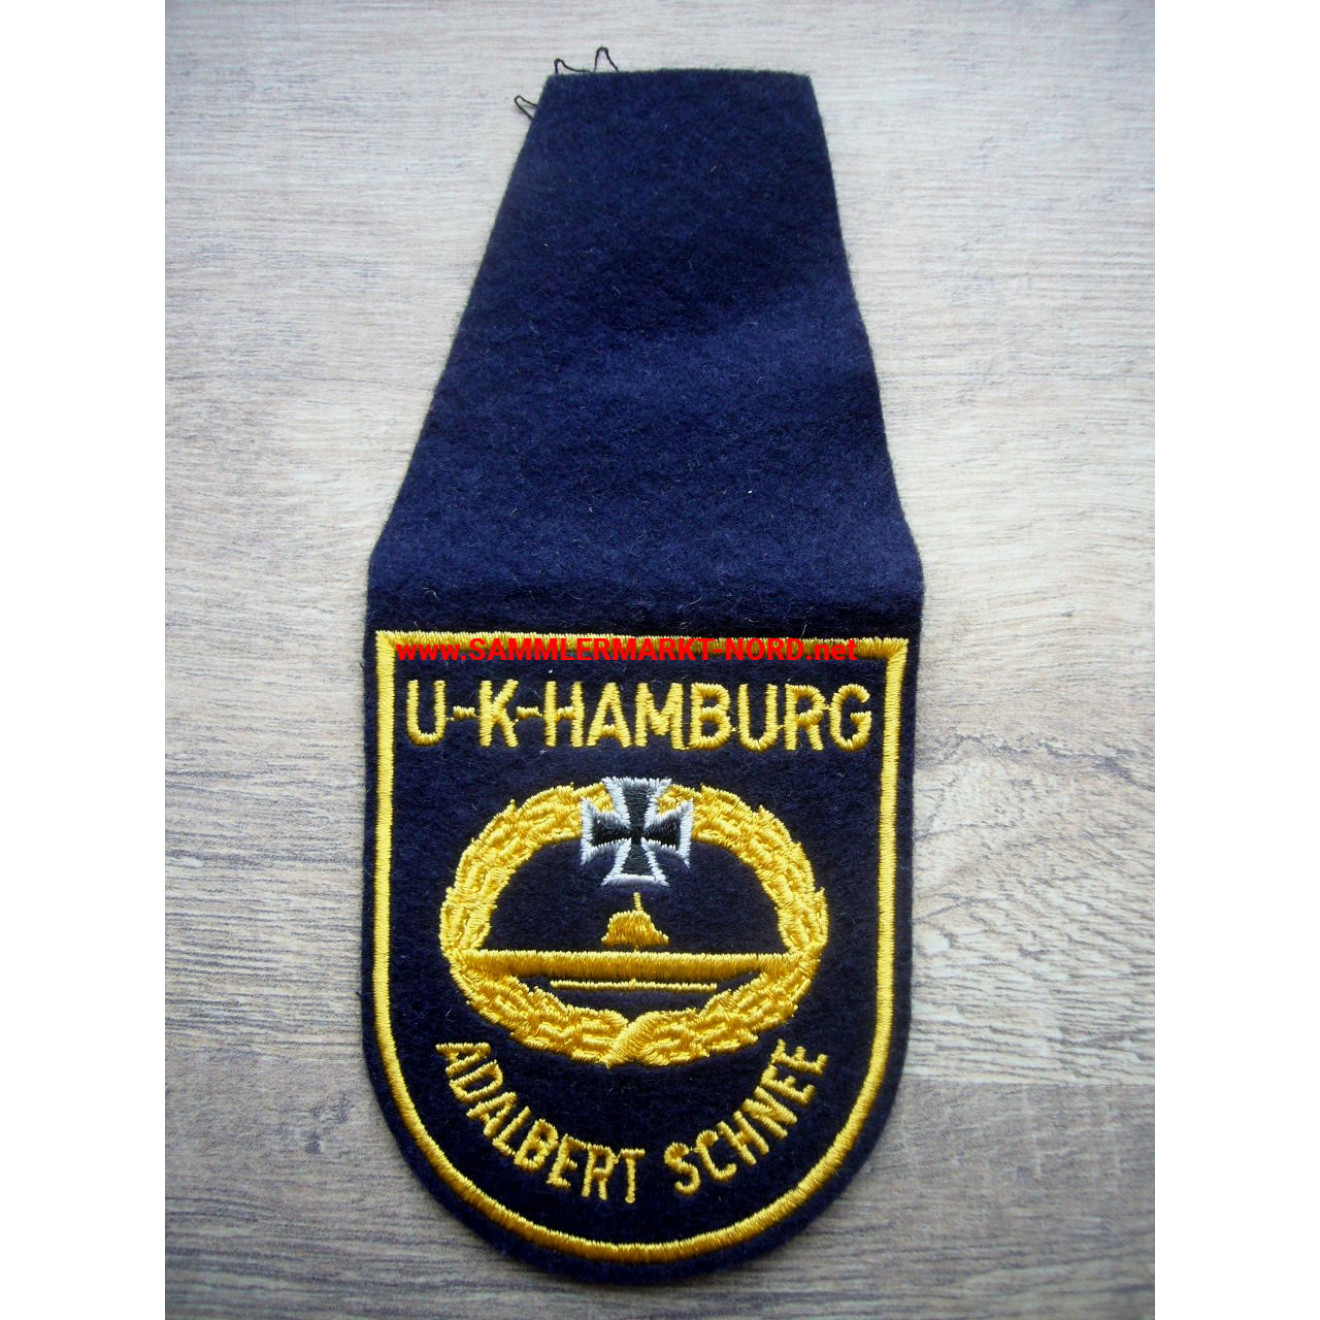 Submarine Comradeship Hamburg "Adalbert Schnee" - Uniform badge